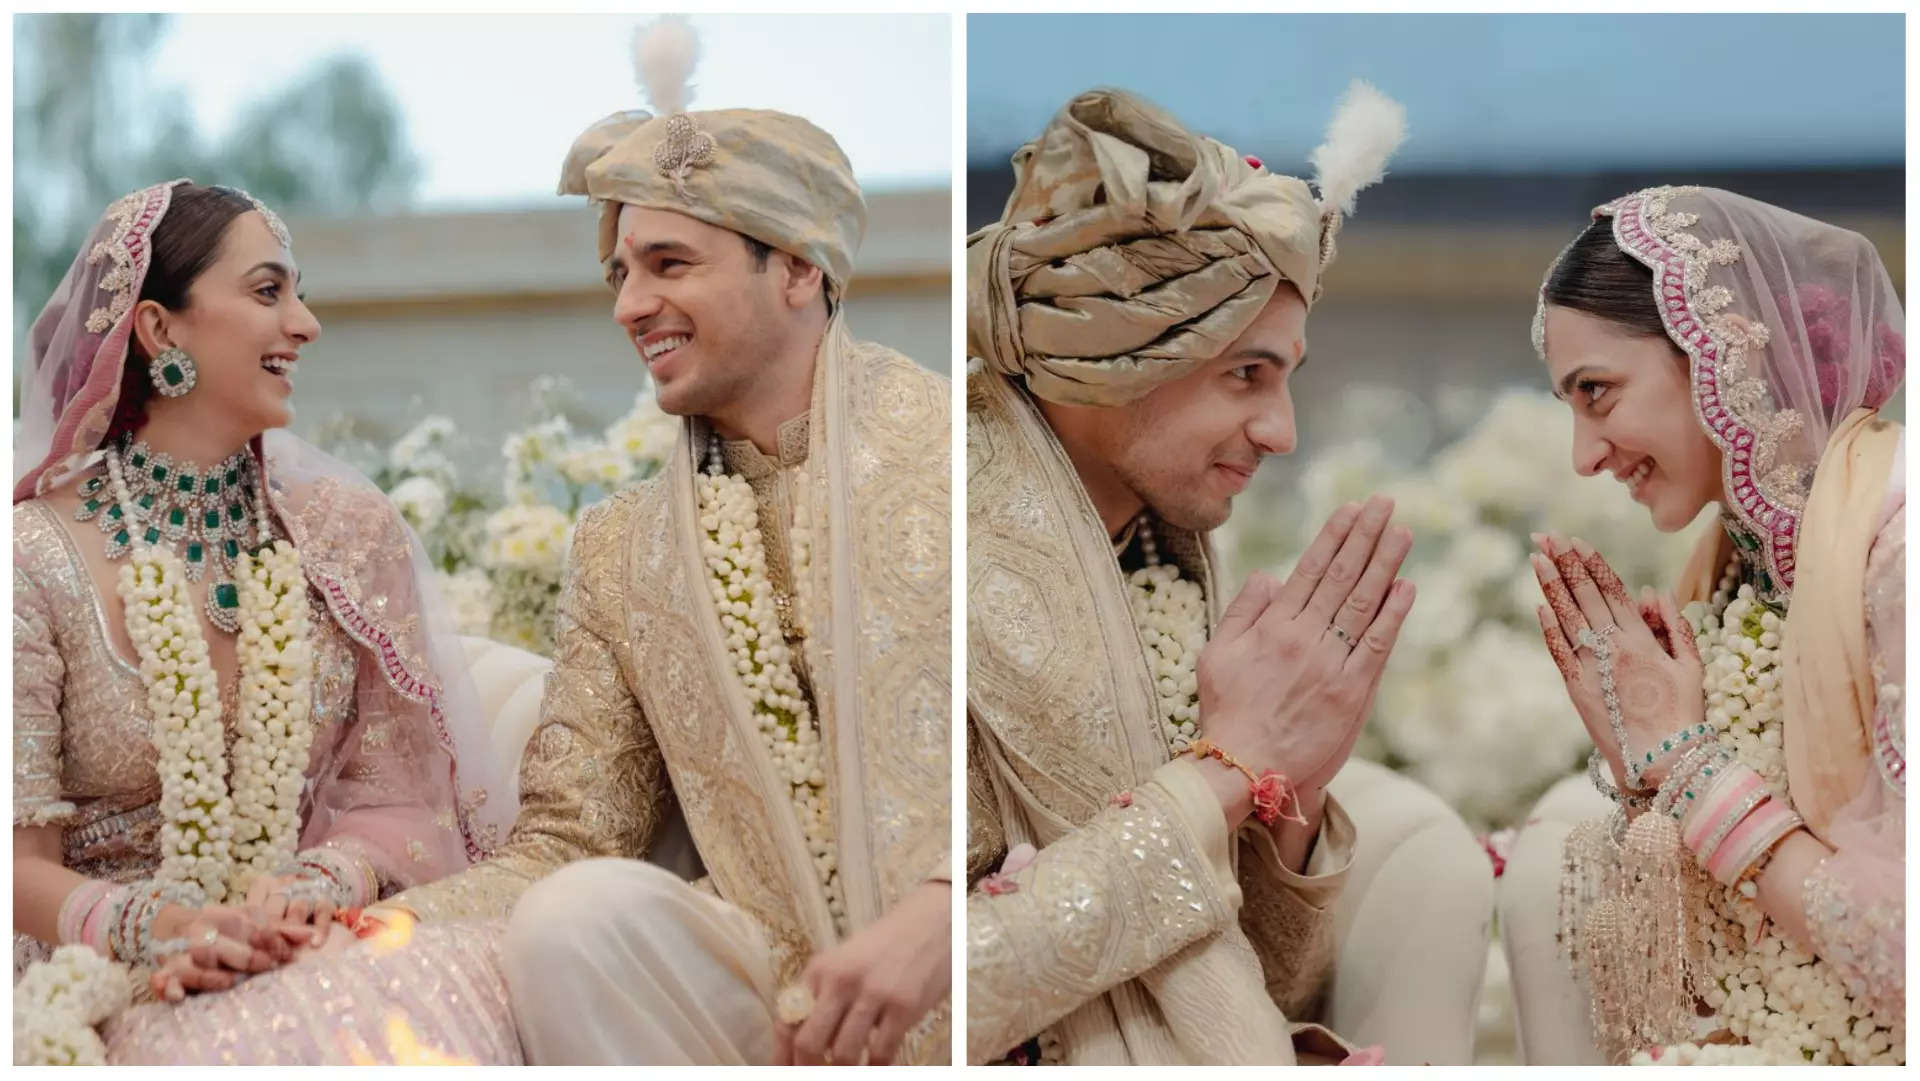 Kiara Advani-Sidharth Malhotra wedding: fans got emotional after see couple  wedding pics-सिद्धार्थ मल्होत्रा-कियारा आडवाणी की शादी की पिक्स देख इमोशनल  हुए फैन्स, कहा 'परफेक्ट जोड़ी'